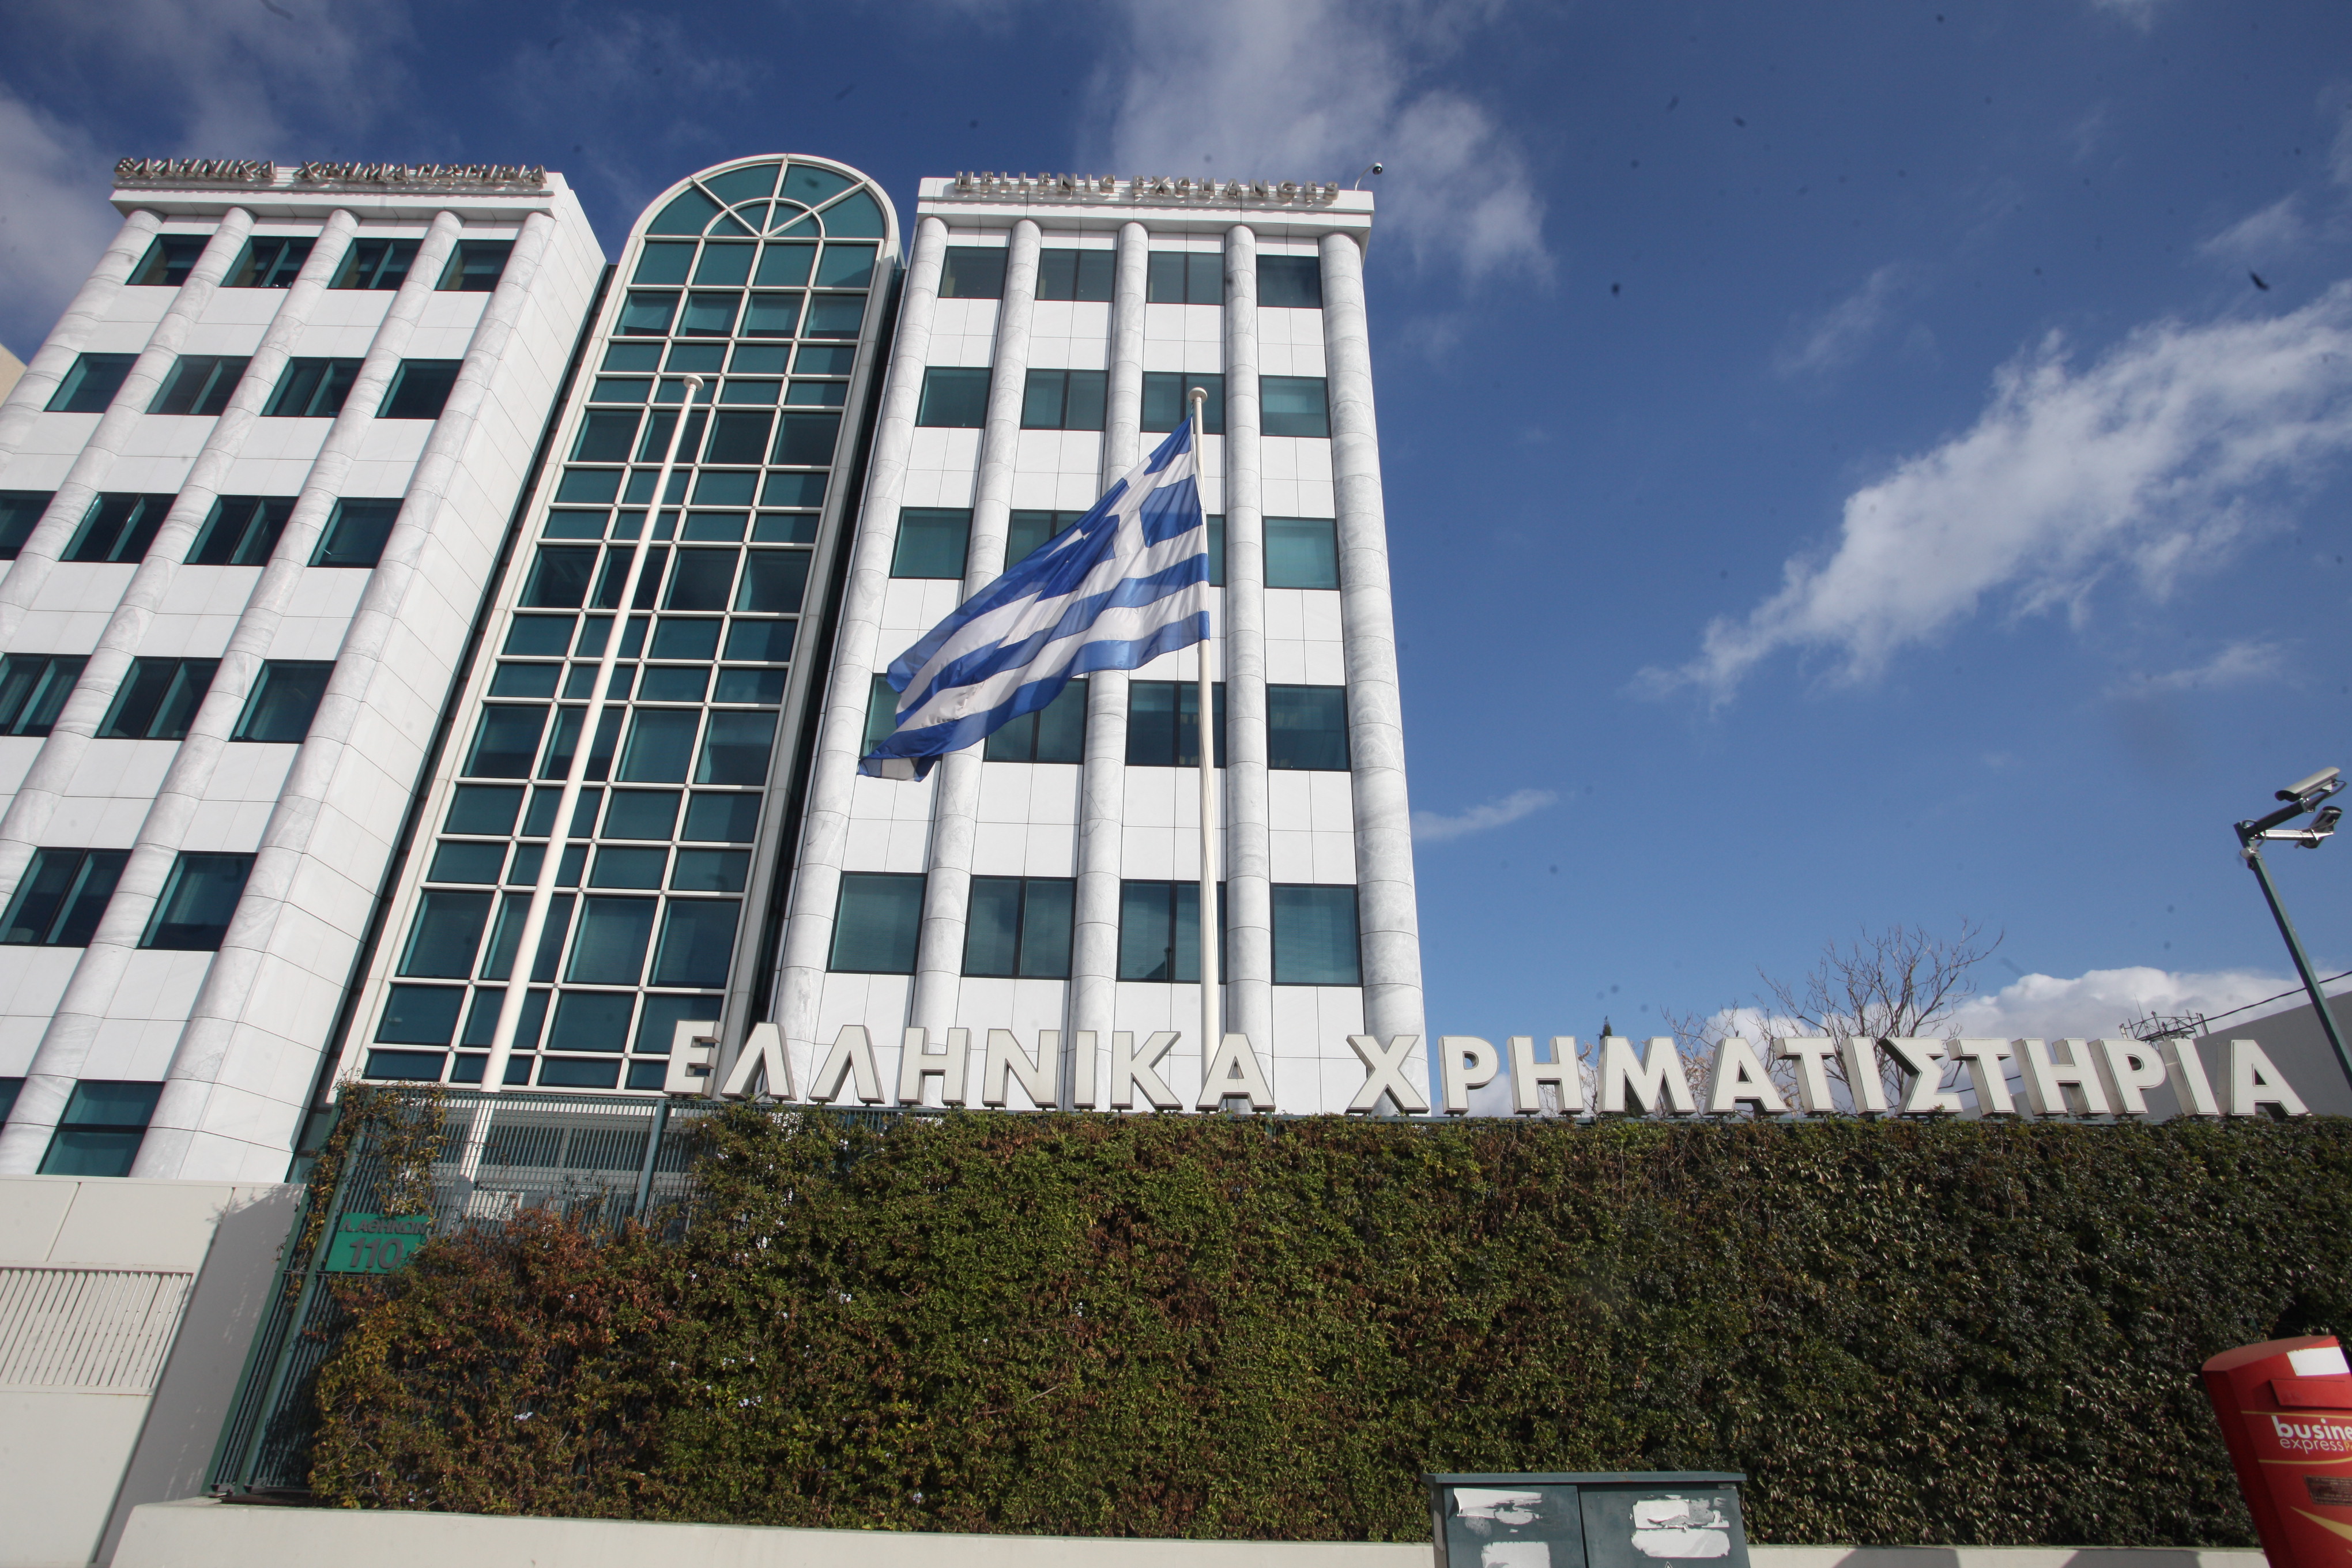 Με πτώση 0,45% έκλεισε το Χρηματιστήριο Αθηνών την Δευτέρα